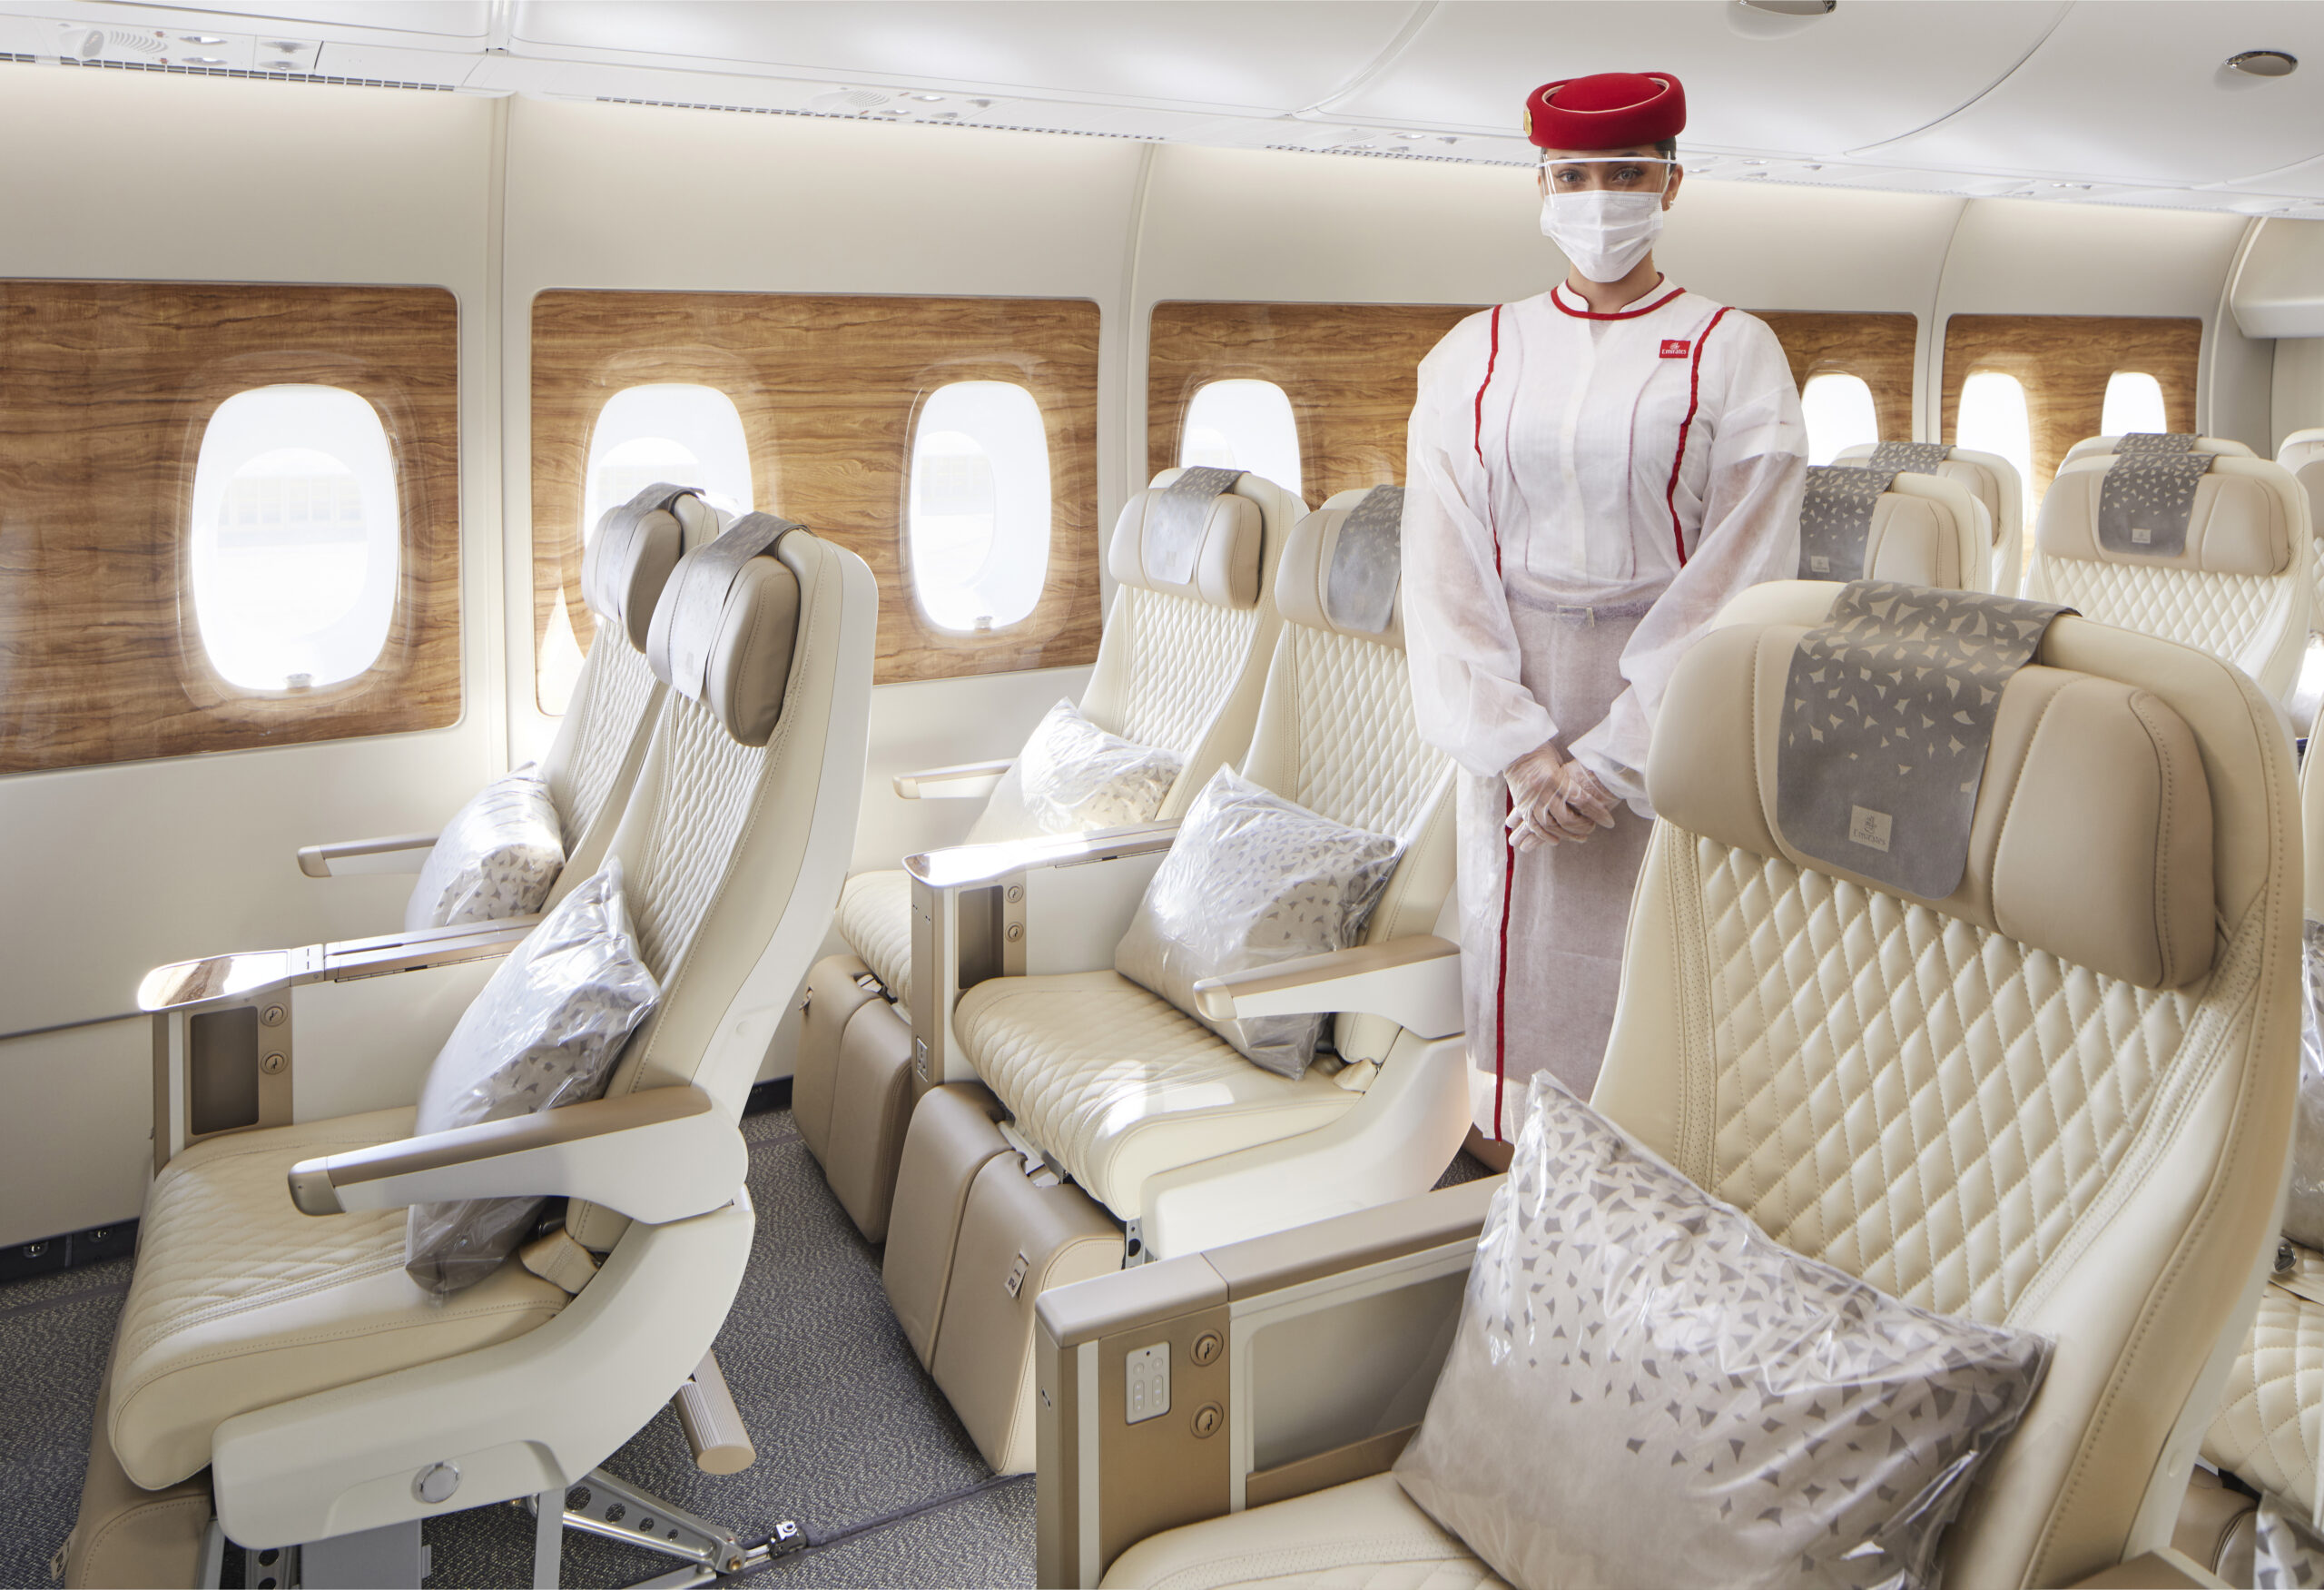 Emirates premium economy